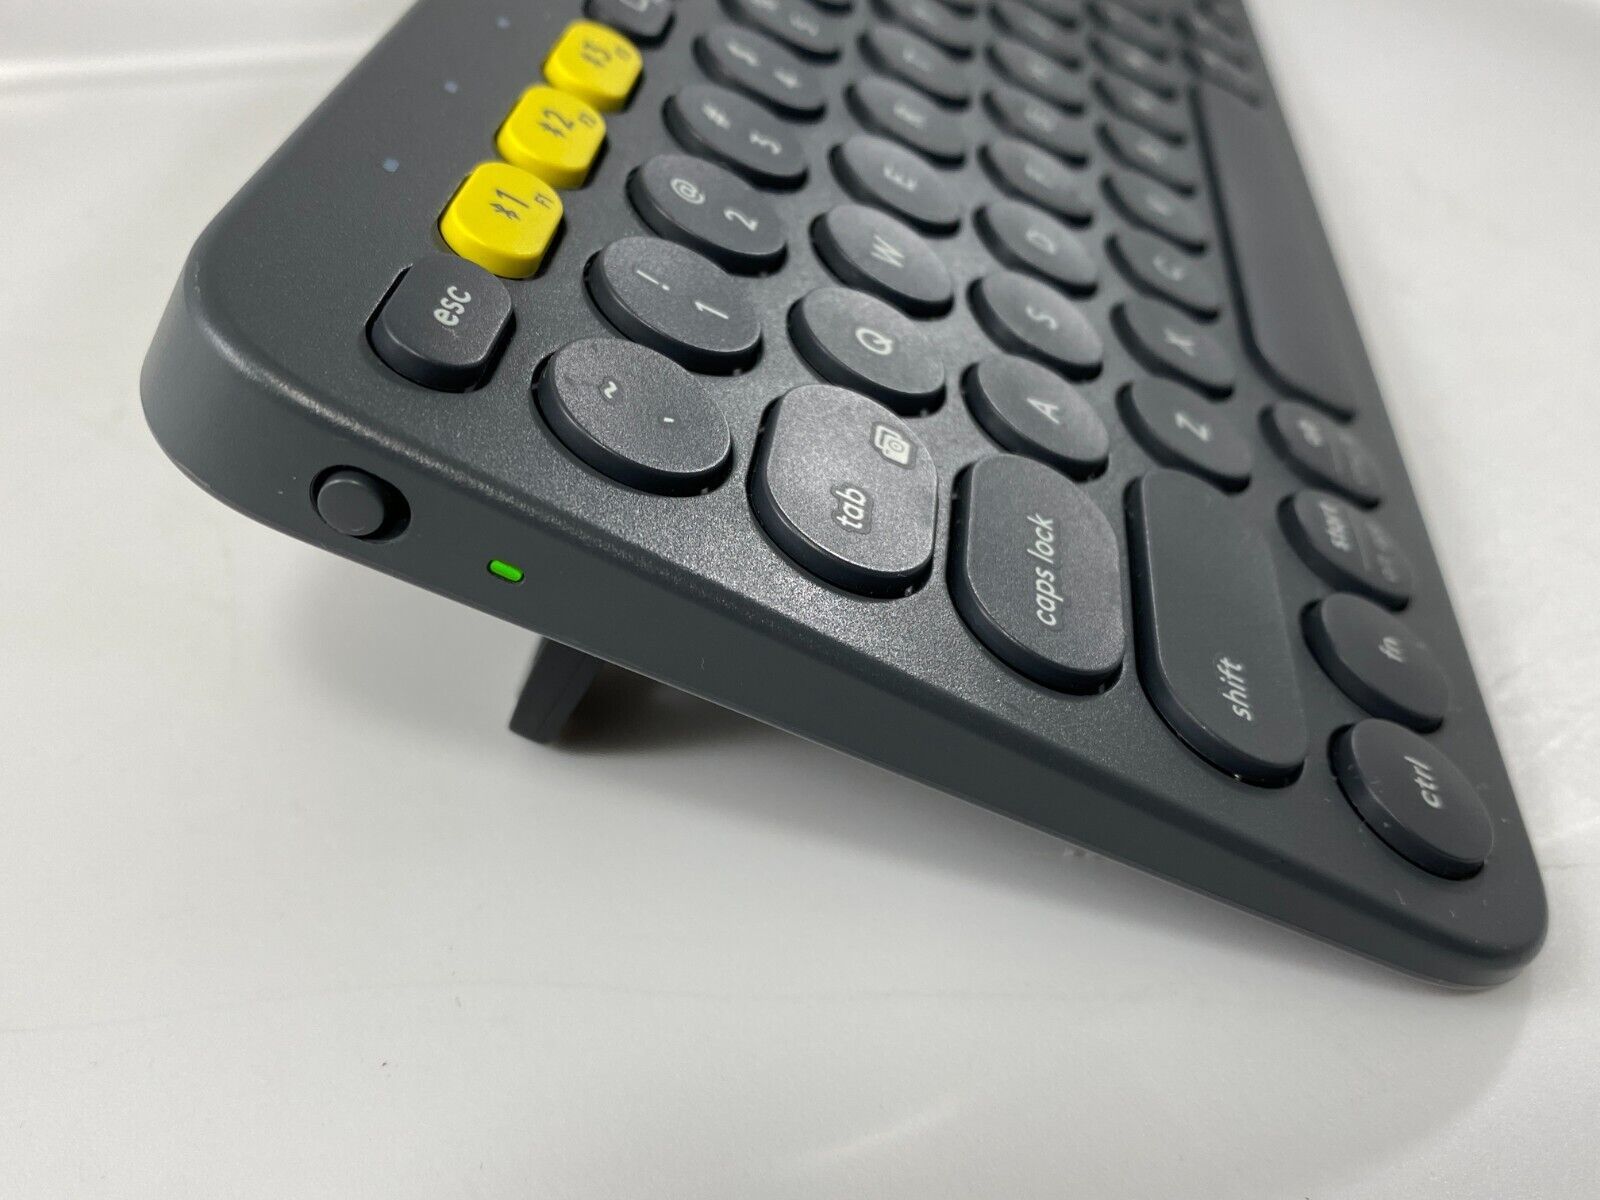 Logitech Bluetooth Mini Keyboard K380 Multi-Device Y-R0056 5th Gen Gray Wireless - $26.95